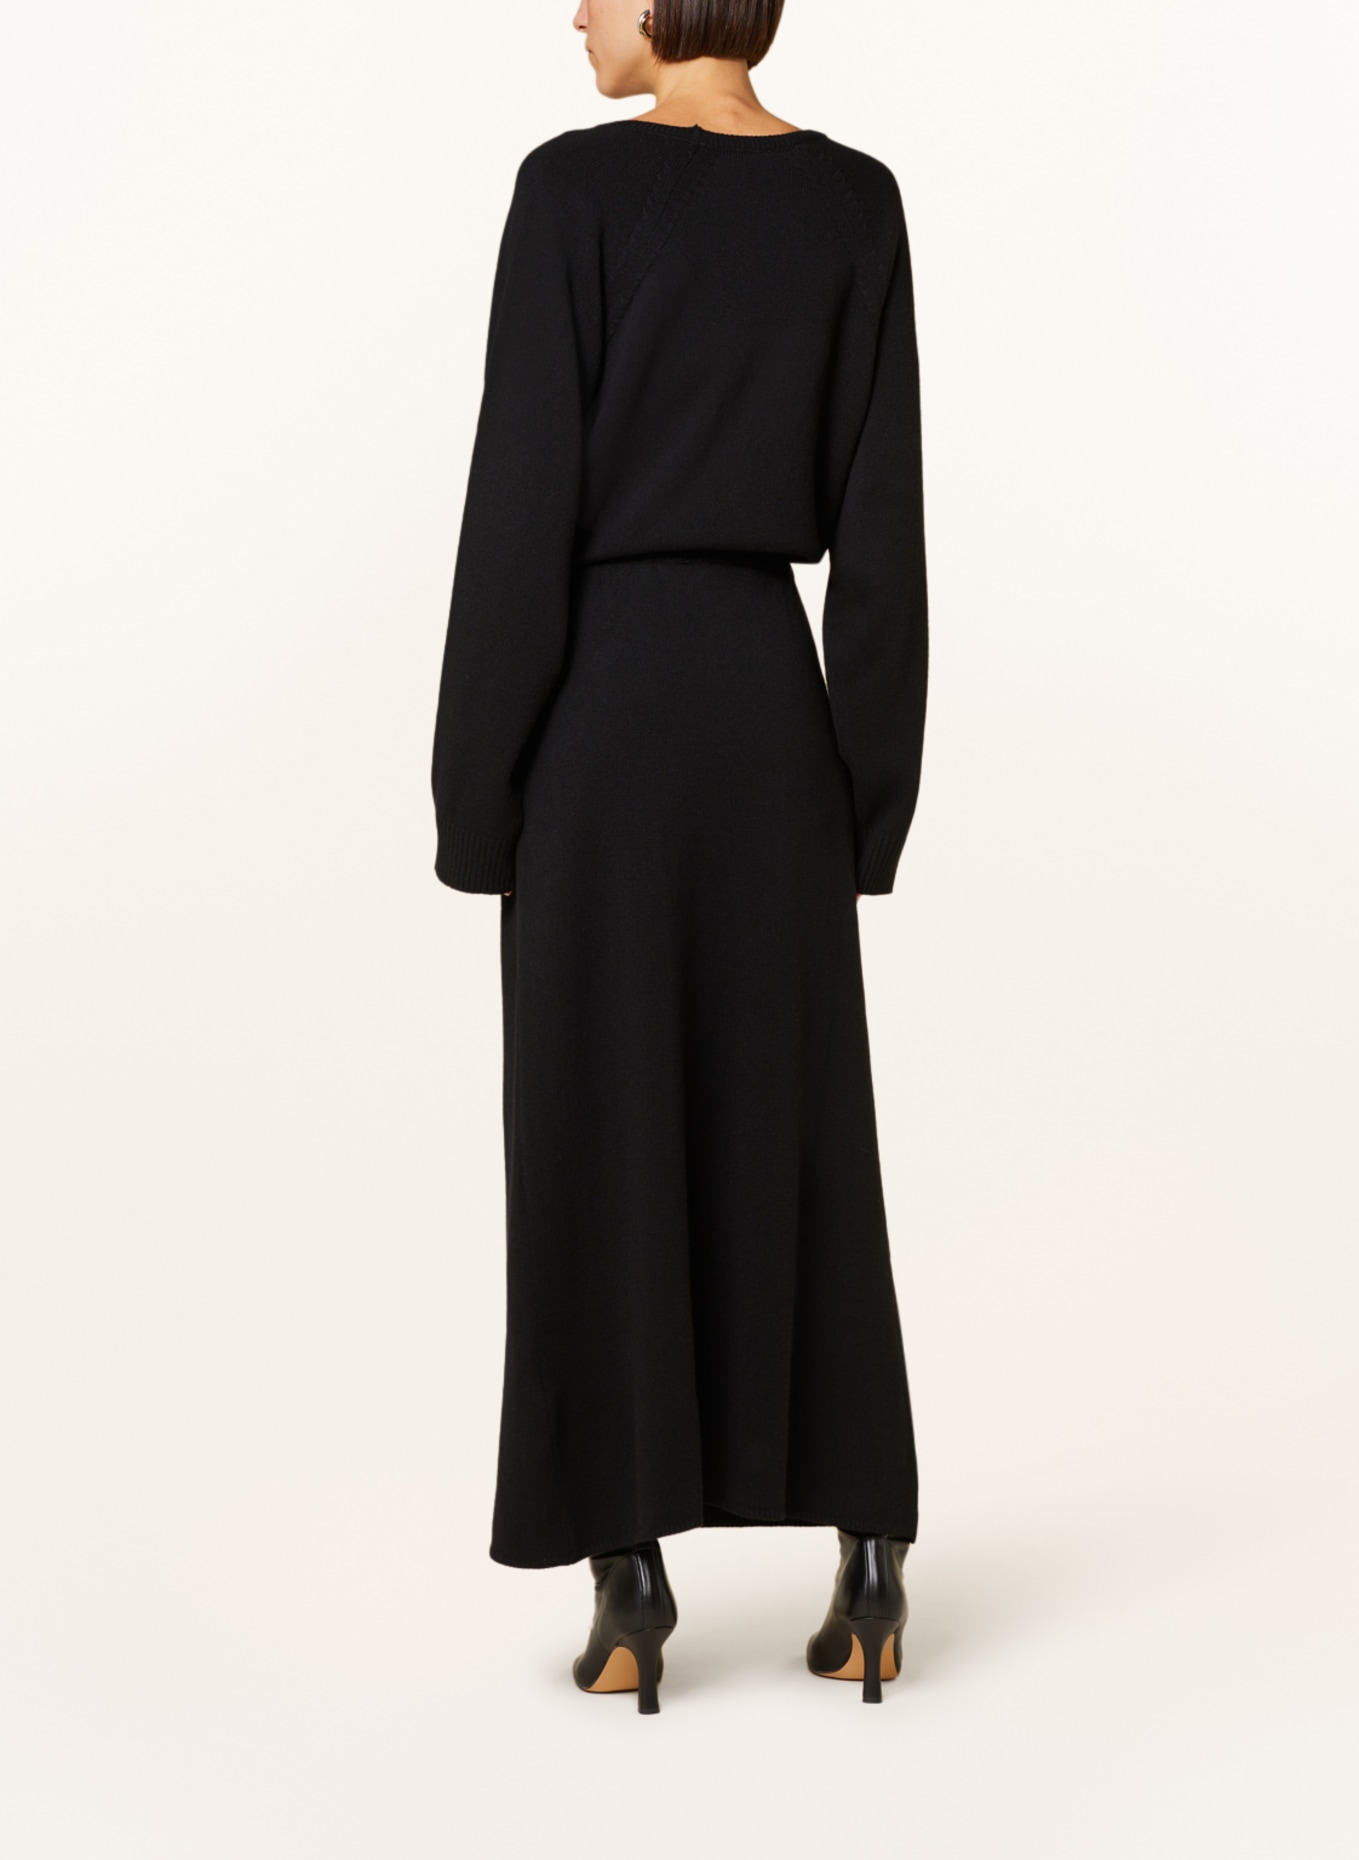 SoSUE Knit skirt, Color: BLACK (Image 3)